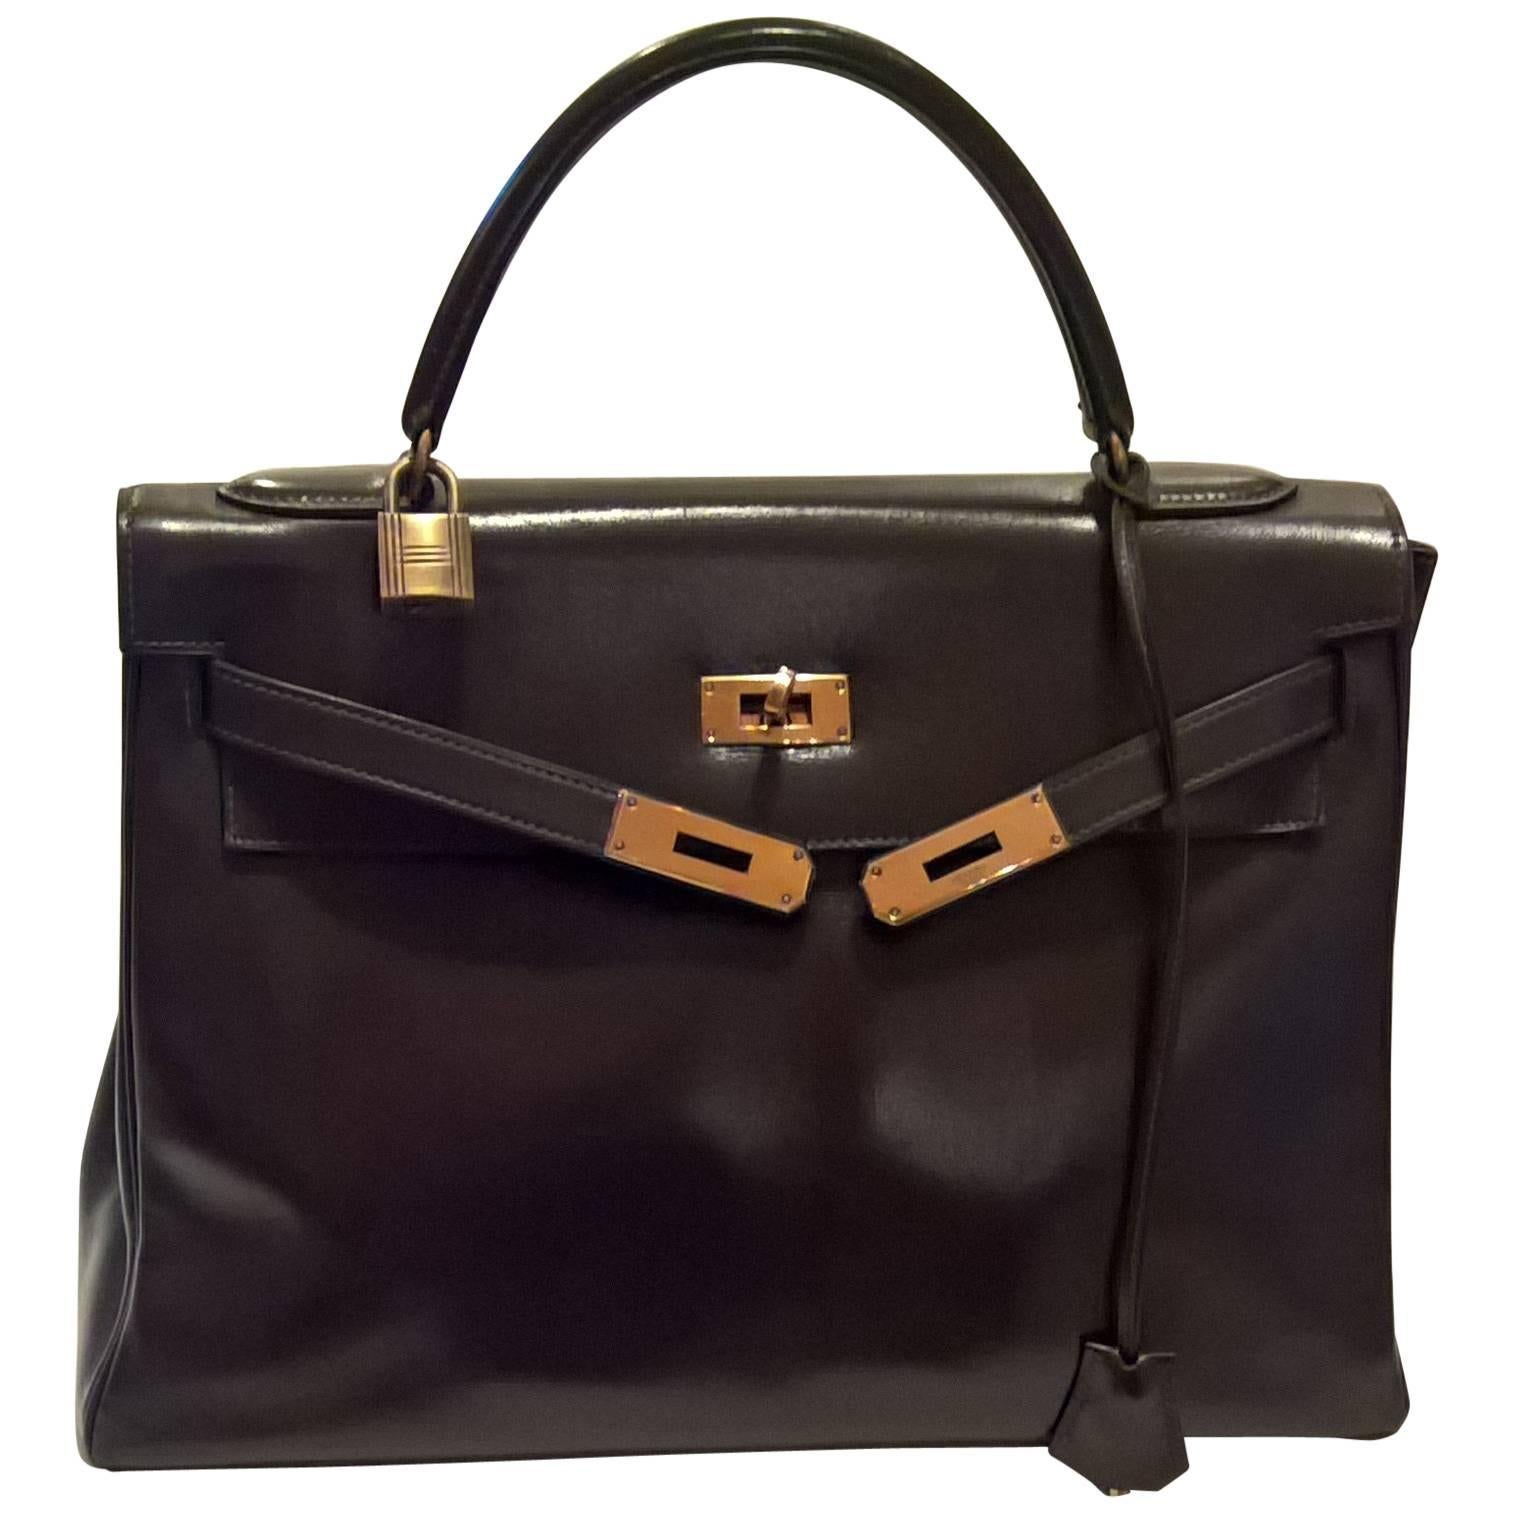 Vintage Hermes Kelly Bag in Brown